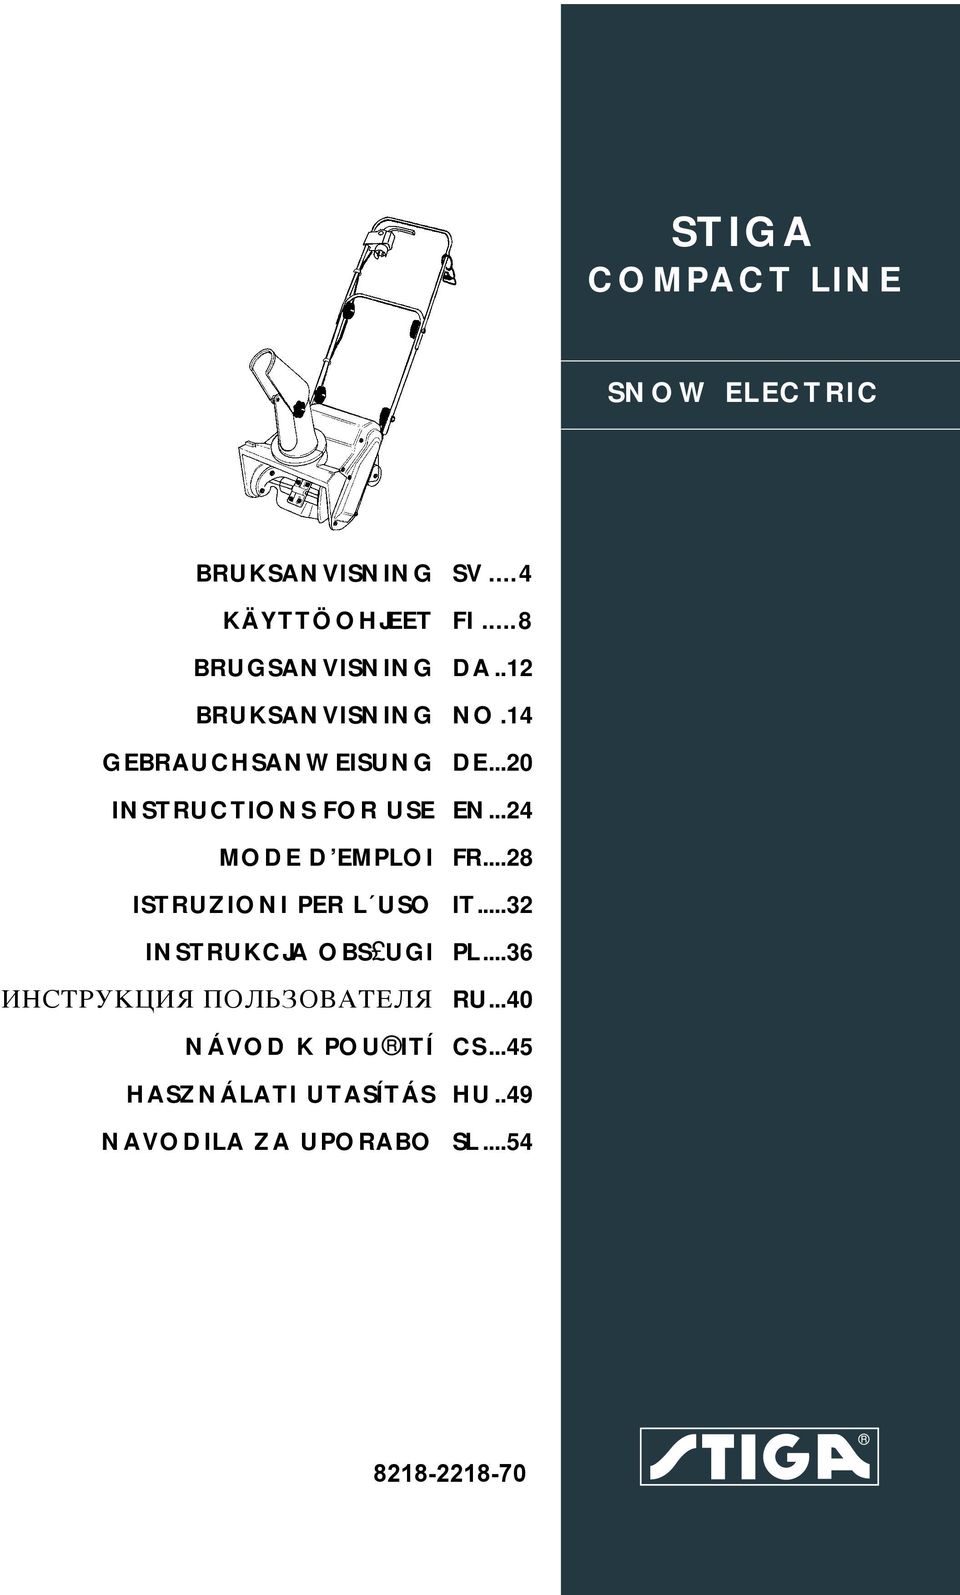 STIGA COMPACT LINE SNOW ELECTRIC SV...4 FI...8 DA..12 NO.14 DE...20 EN...24  FR...28 IT...32 PL...36 RU...40 CS...45 HU..49 SL PDF Free Download